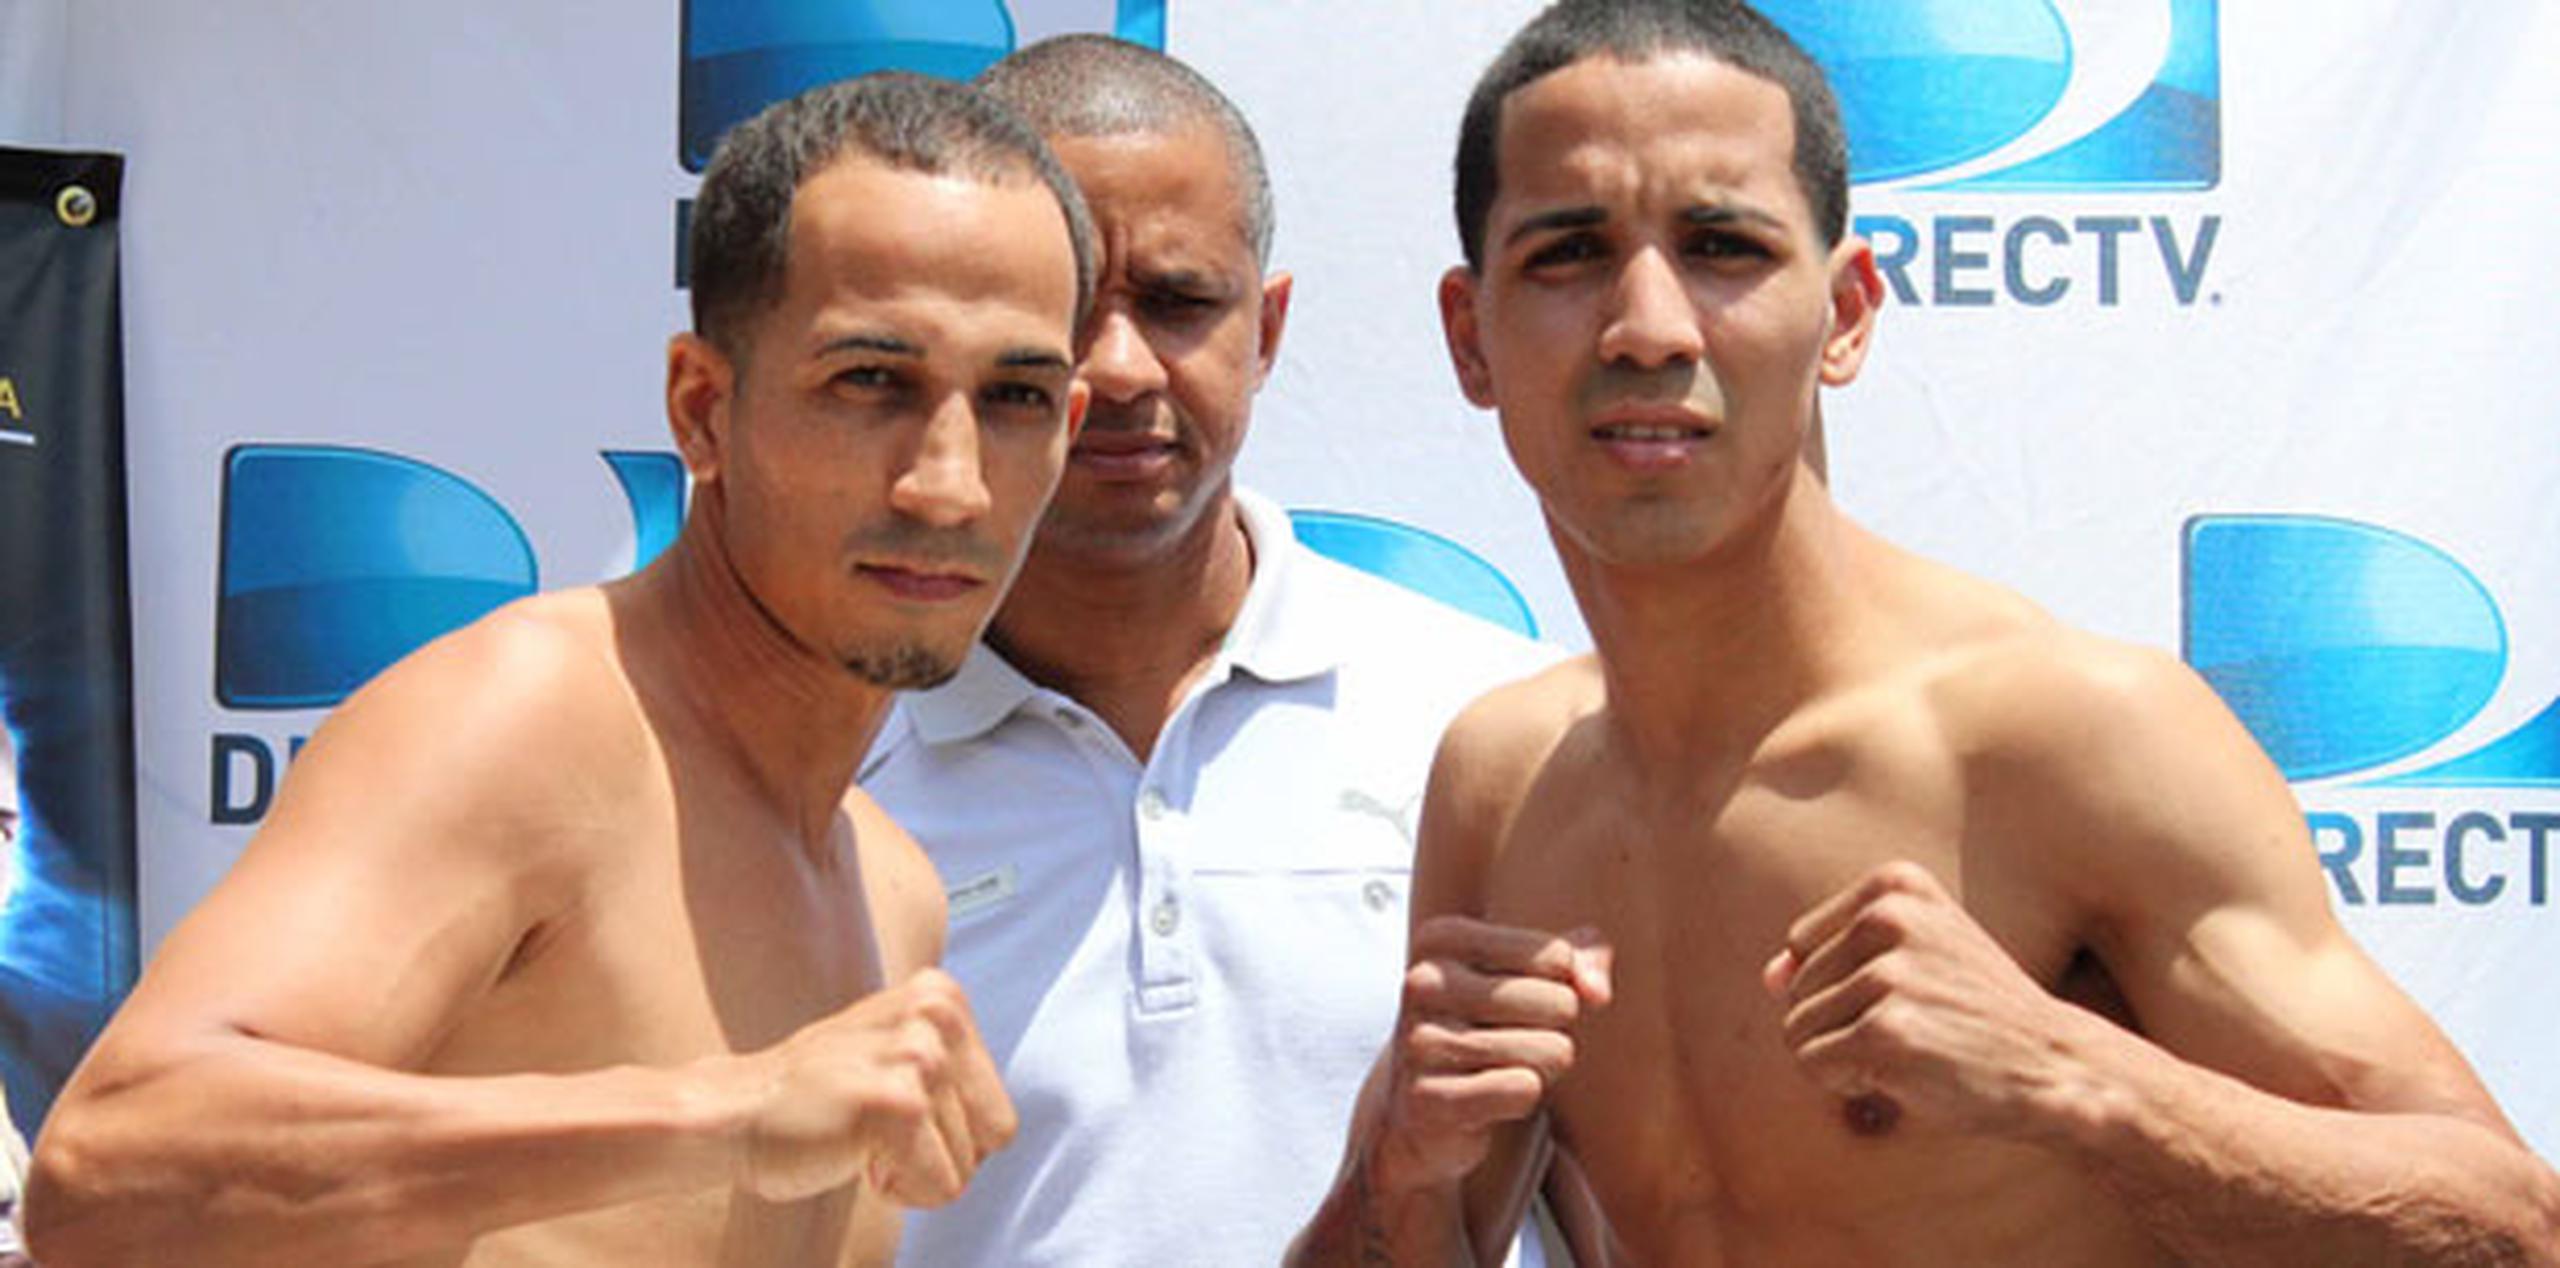 Emmanuel Rodríguez, a la derecha, (8-0 con 5 KO), quién buscará seguir aumentando su resumé de victorias ante Félix Pérez (8-4 con 3 KO). (Esdel Palermo / Fresh Boxing)